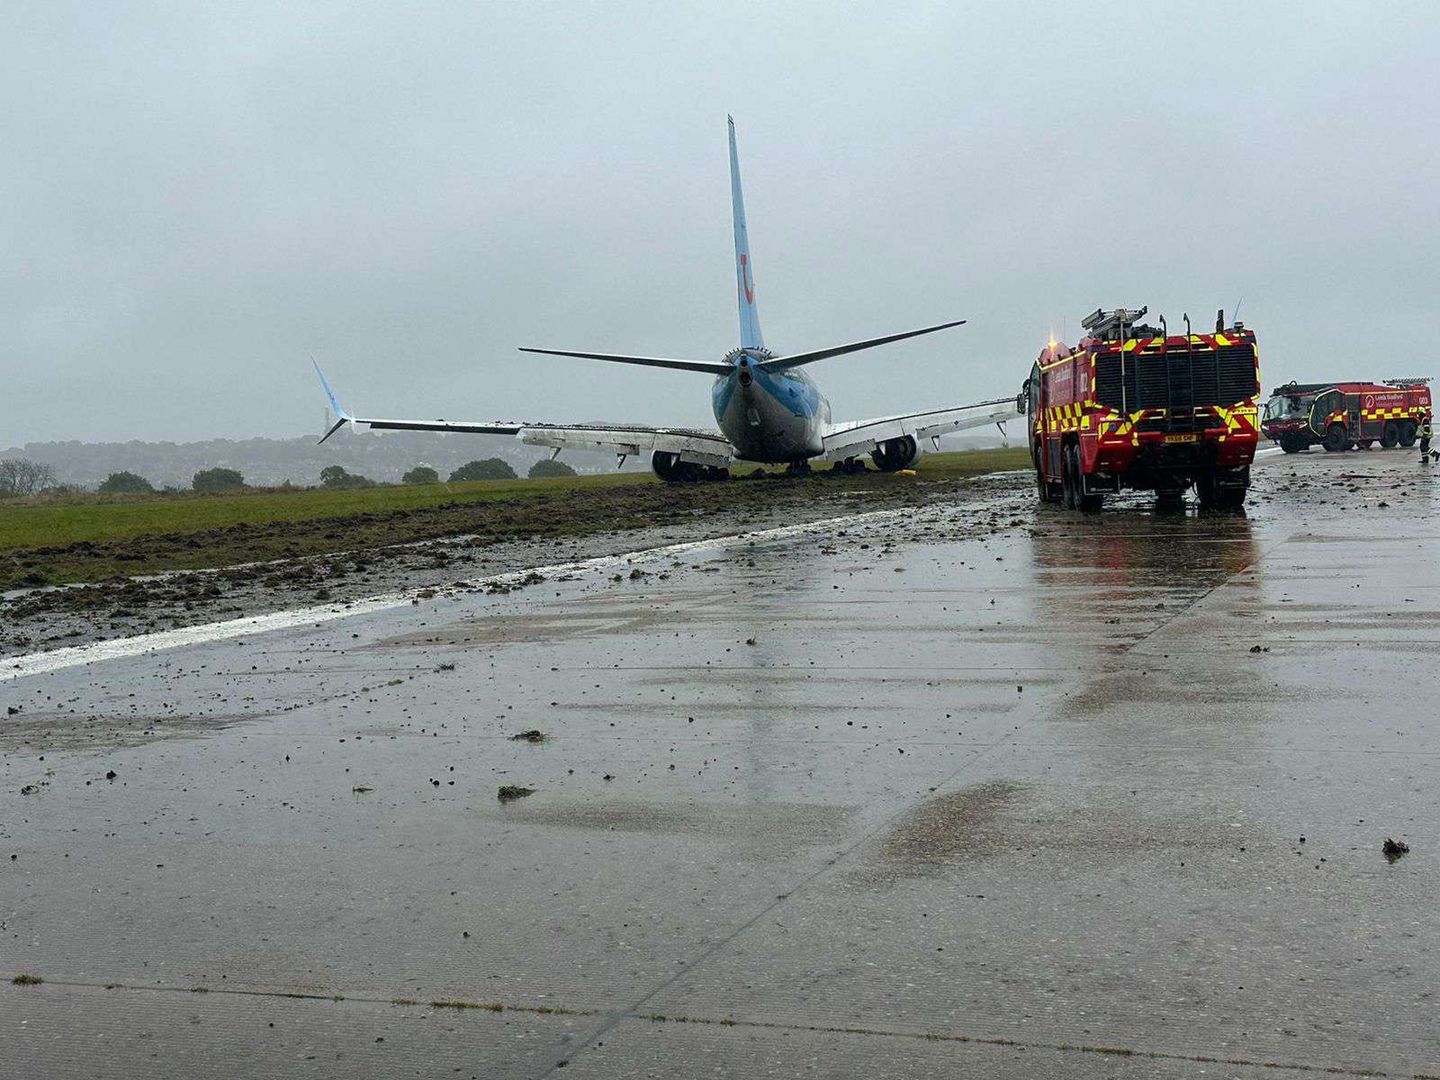 Samolot wypadł z pasa przy lądowaniu. Pasażerowie byli przerażeni